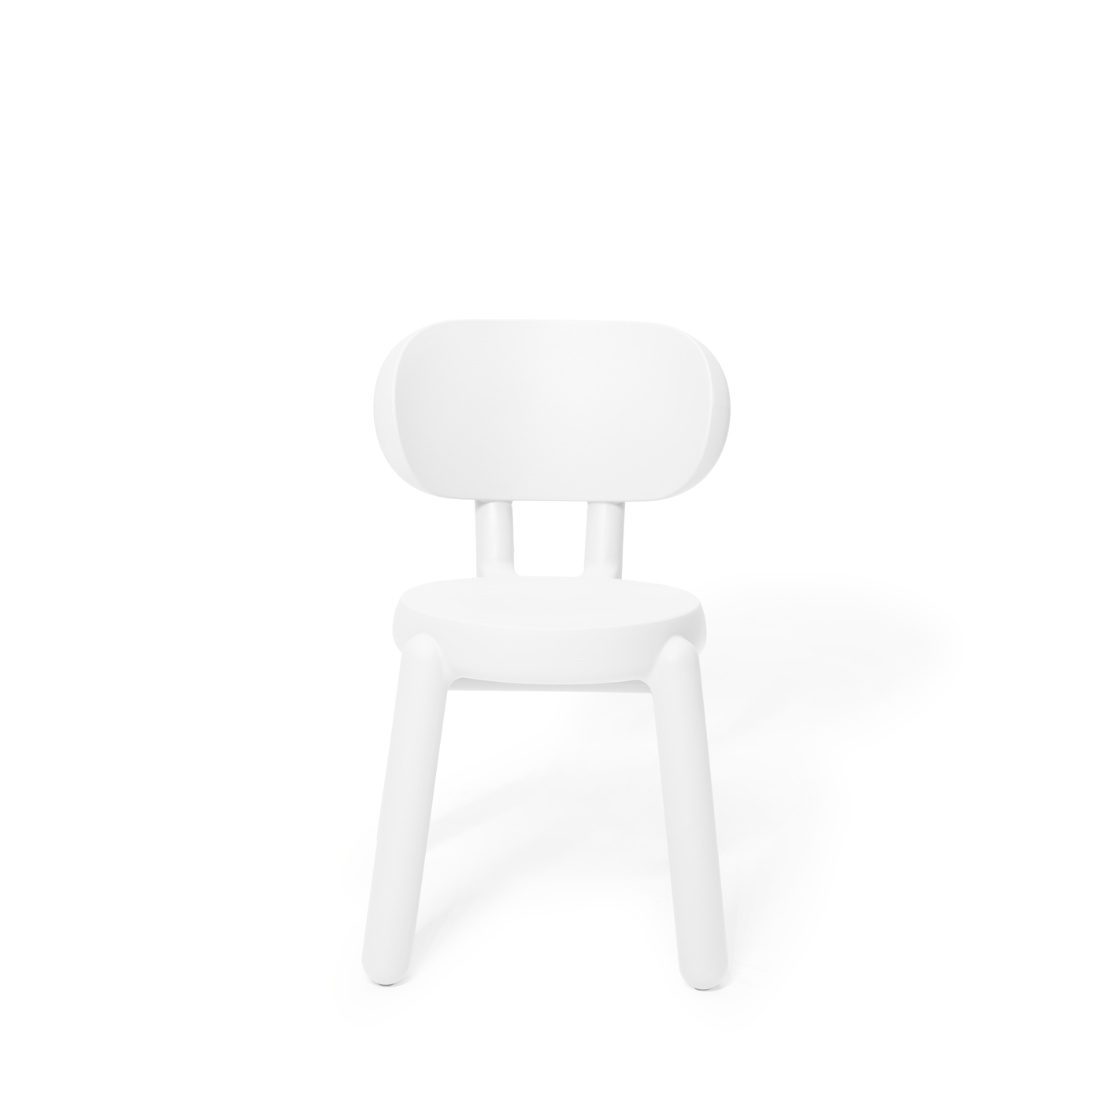 Silla Fatboy Kaboom Chair - White